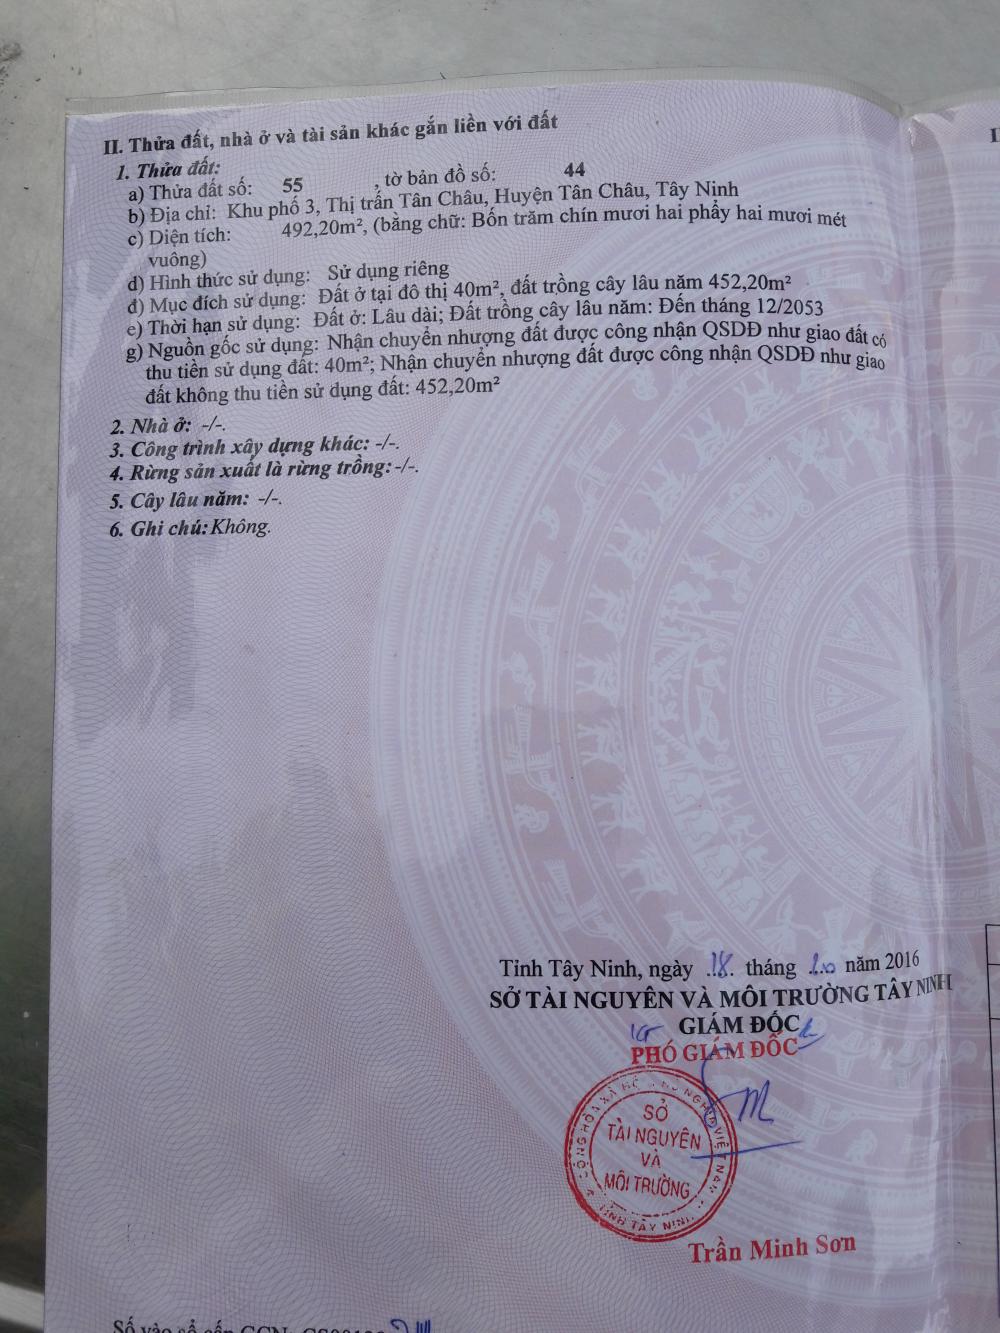 Chính chủ bán đất lô 9 khu phố 3, trung tâm thị trấn Tân Châu, Tây Ninh. LH: 0905285469/0988789485